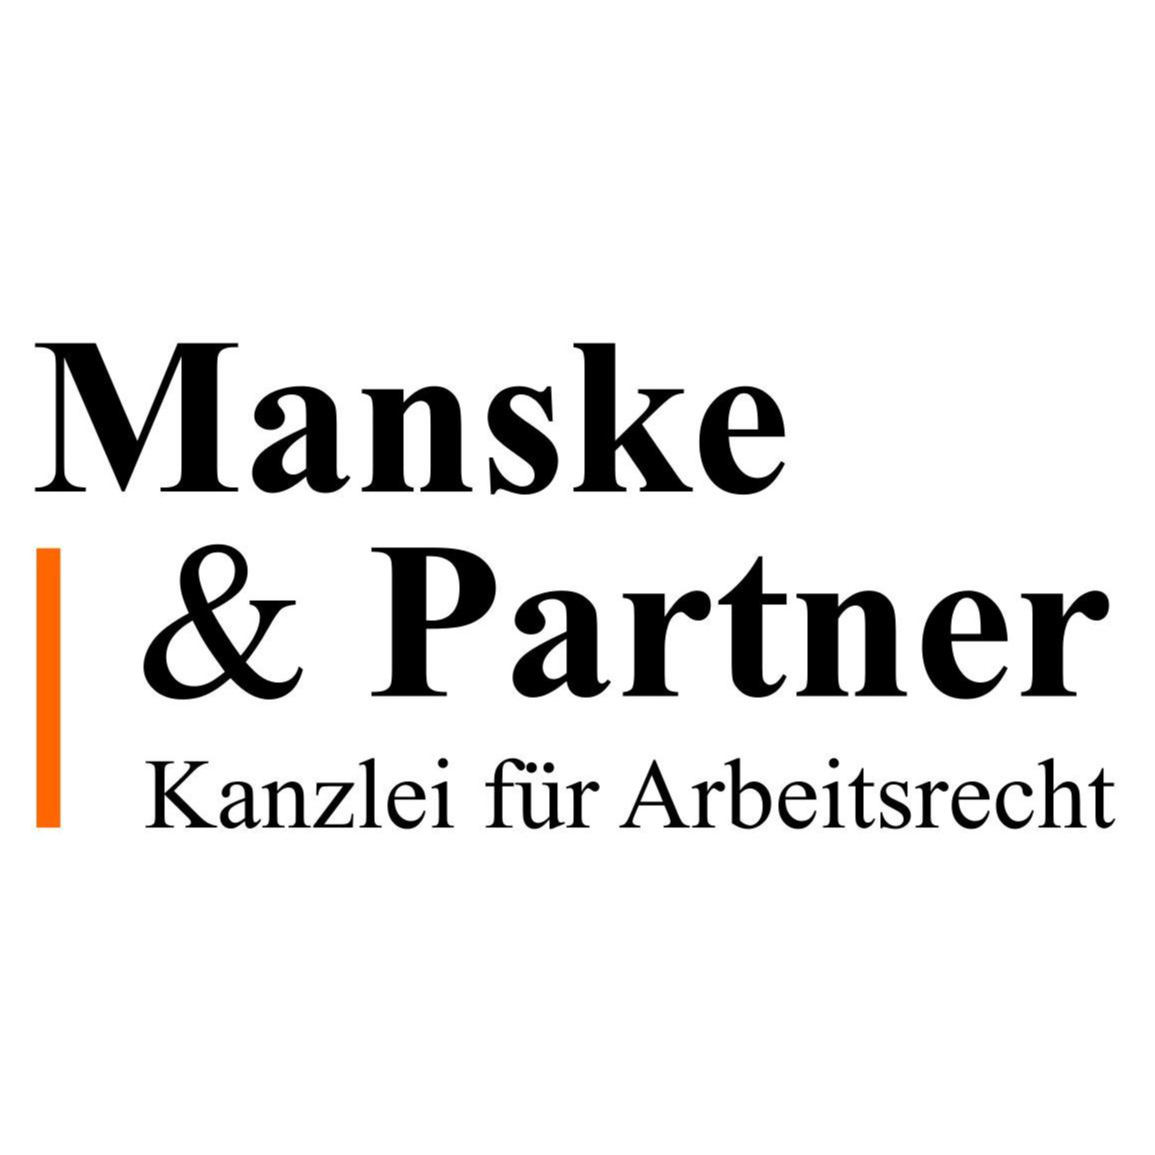 Manske & Partner Kanzlei für Arbeitsrecht in Ansbach - Logo